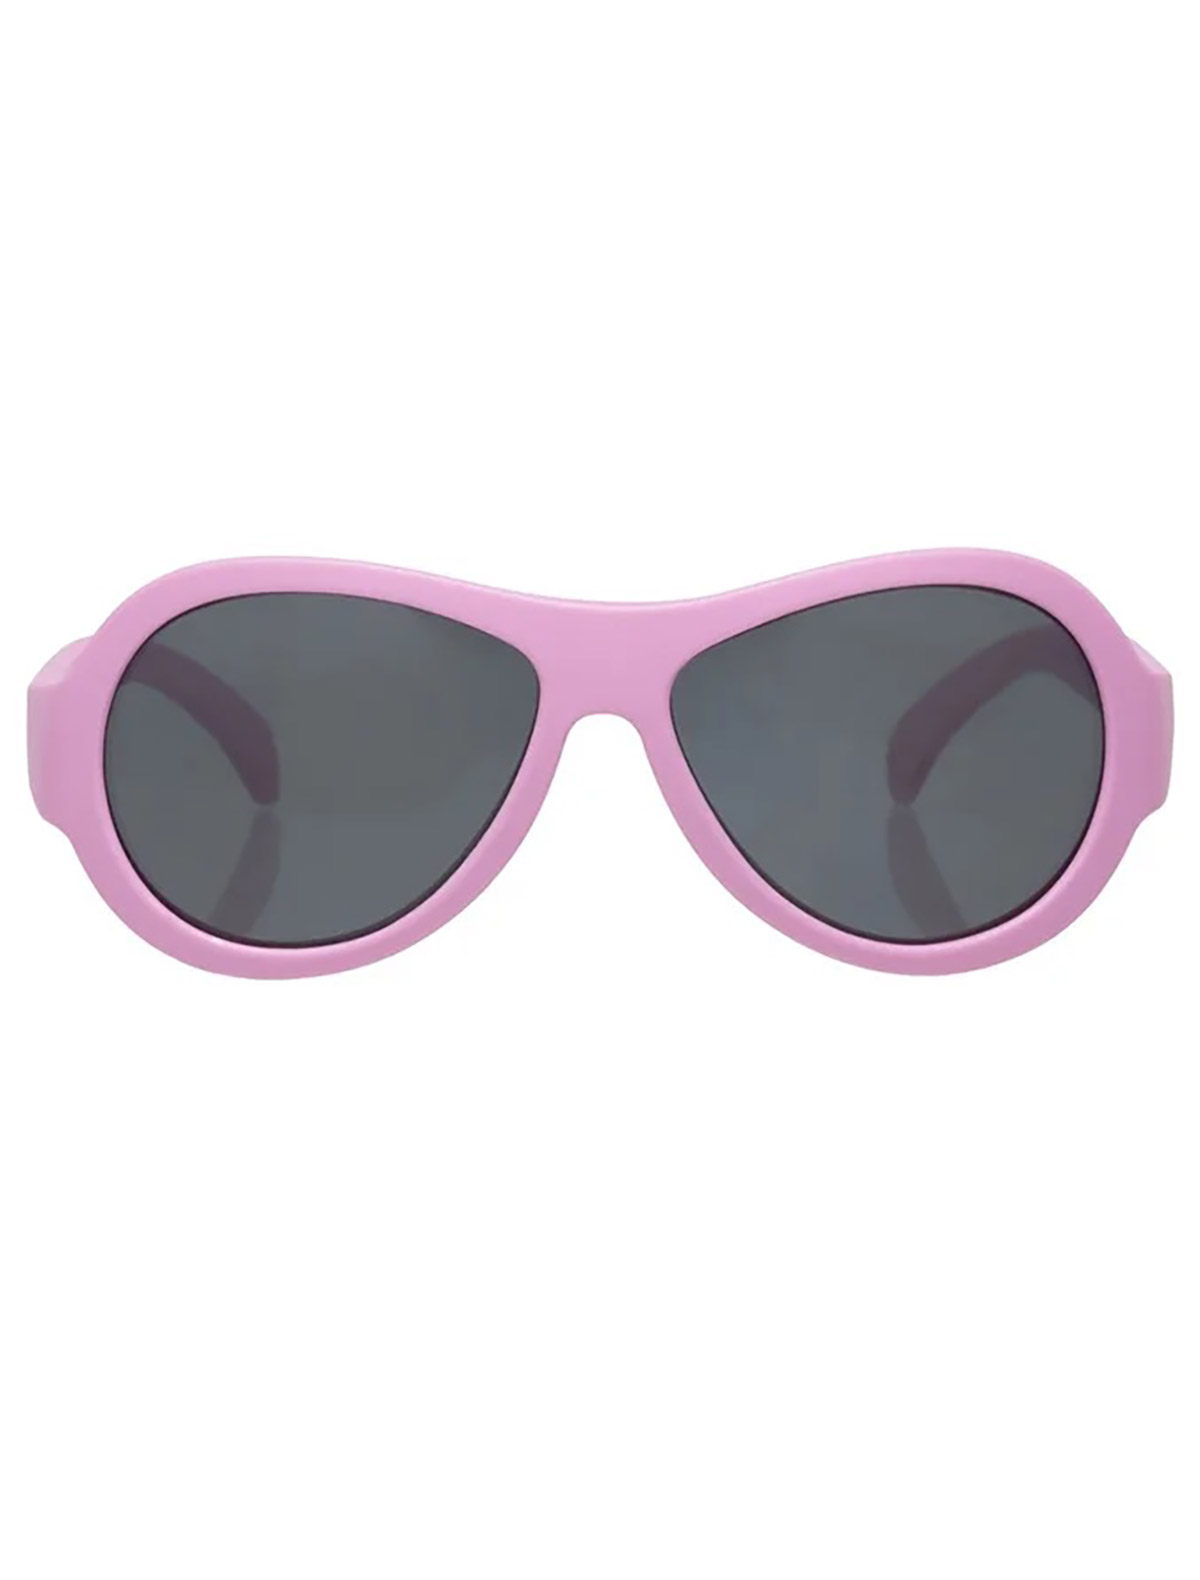 солнцезащитные очки babiators для девочки, розовые